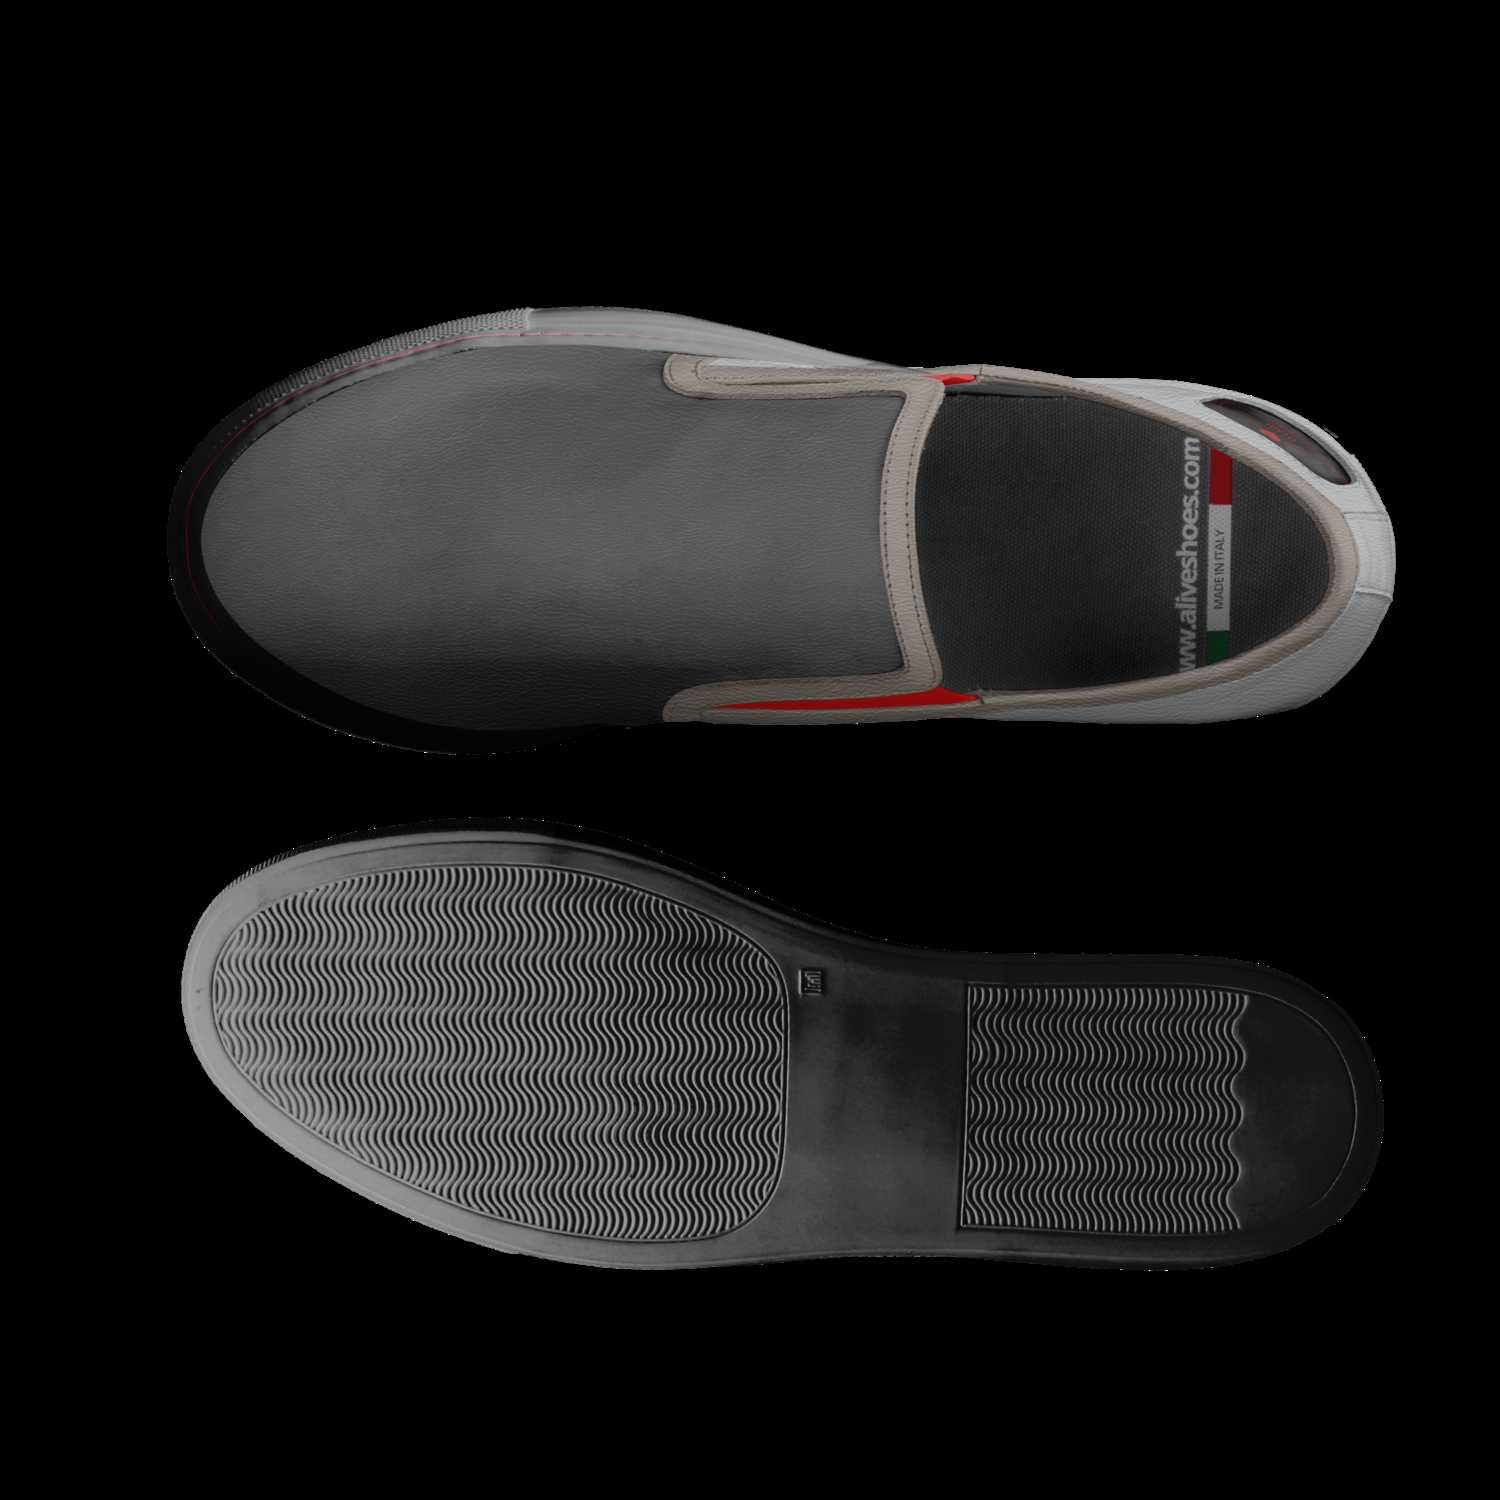 A Custom Shoe concept by Parris Franco